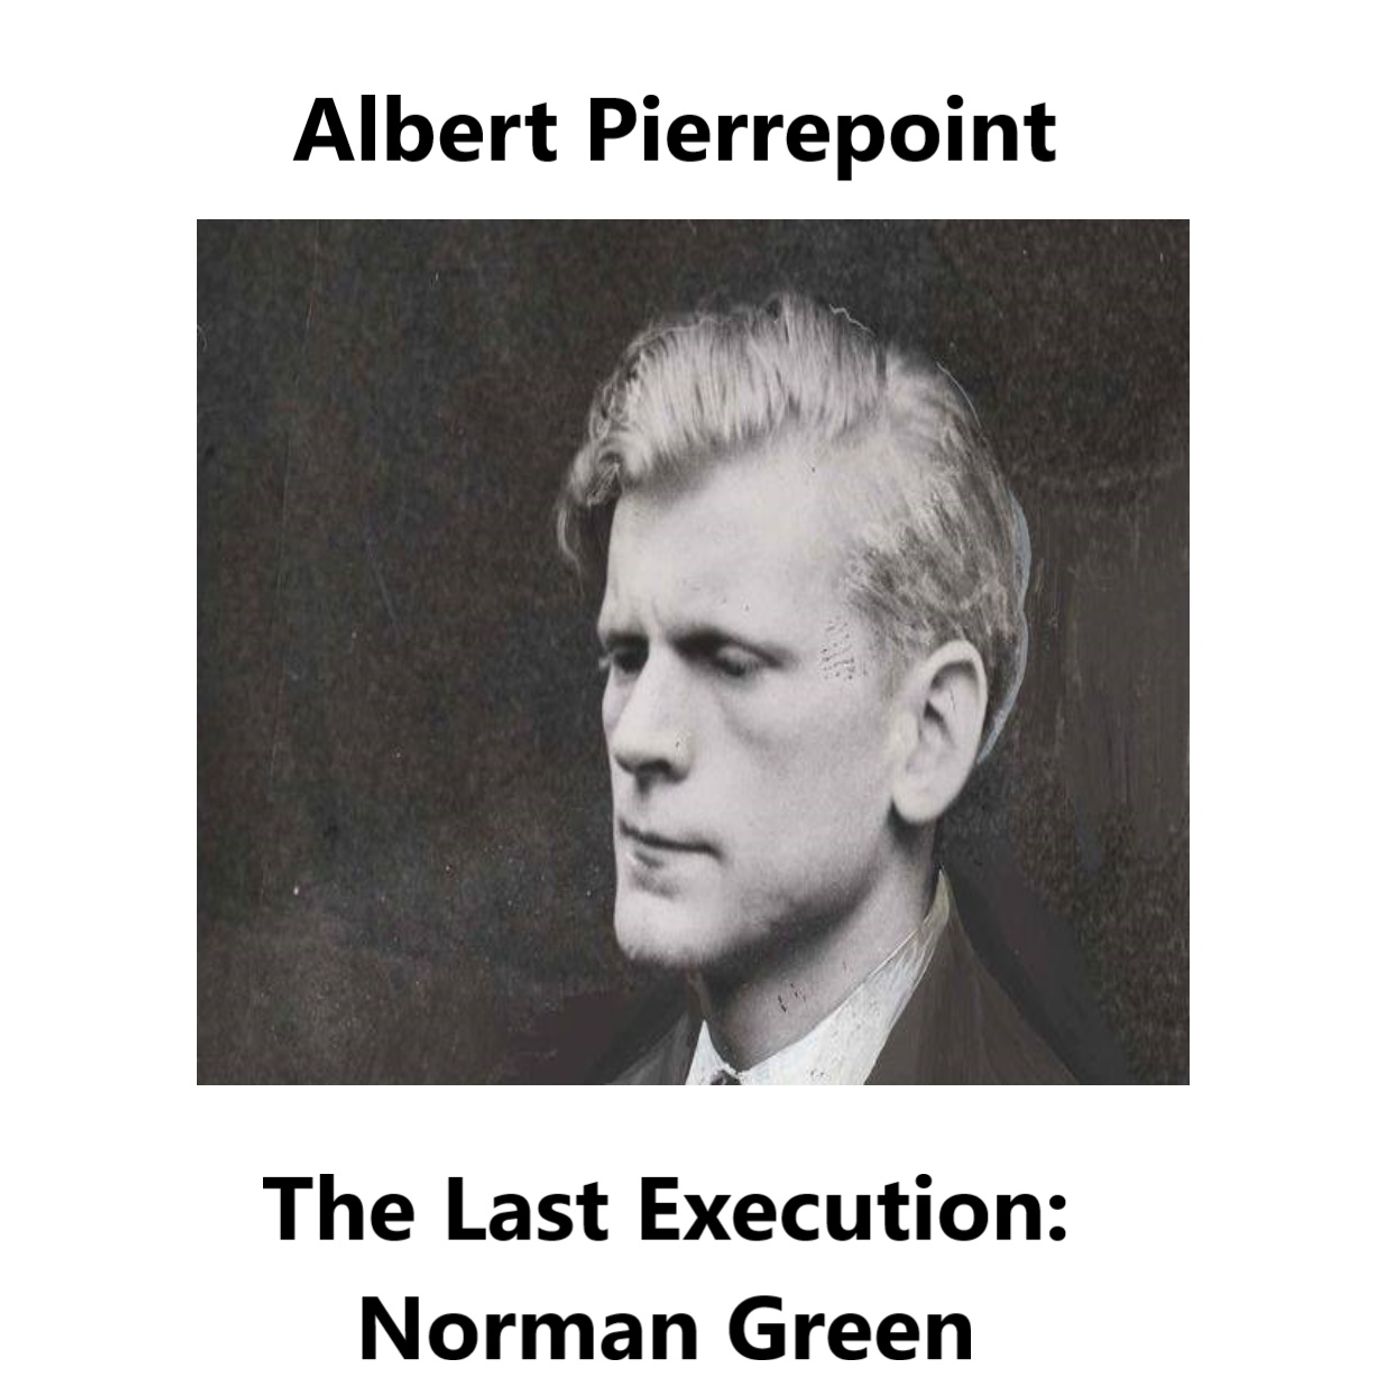 Albert Pierrepoint: The final execution - Norman Green